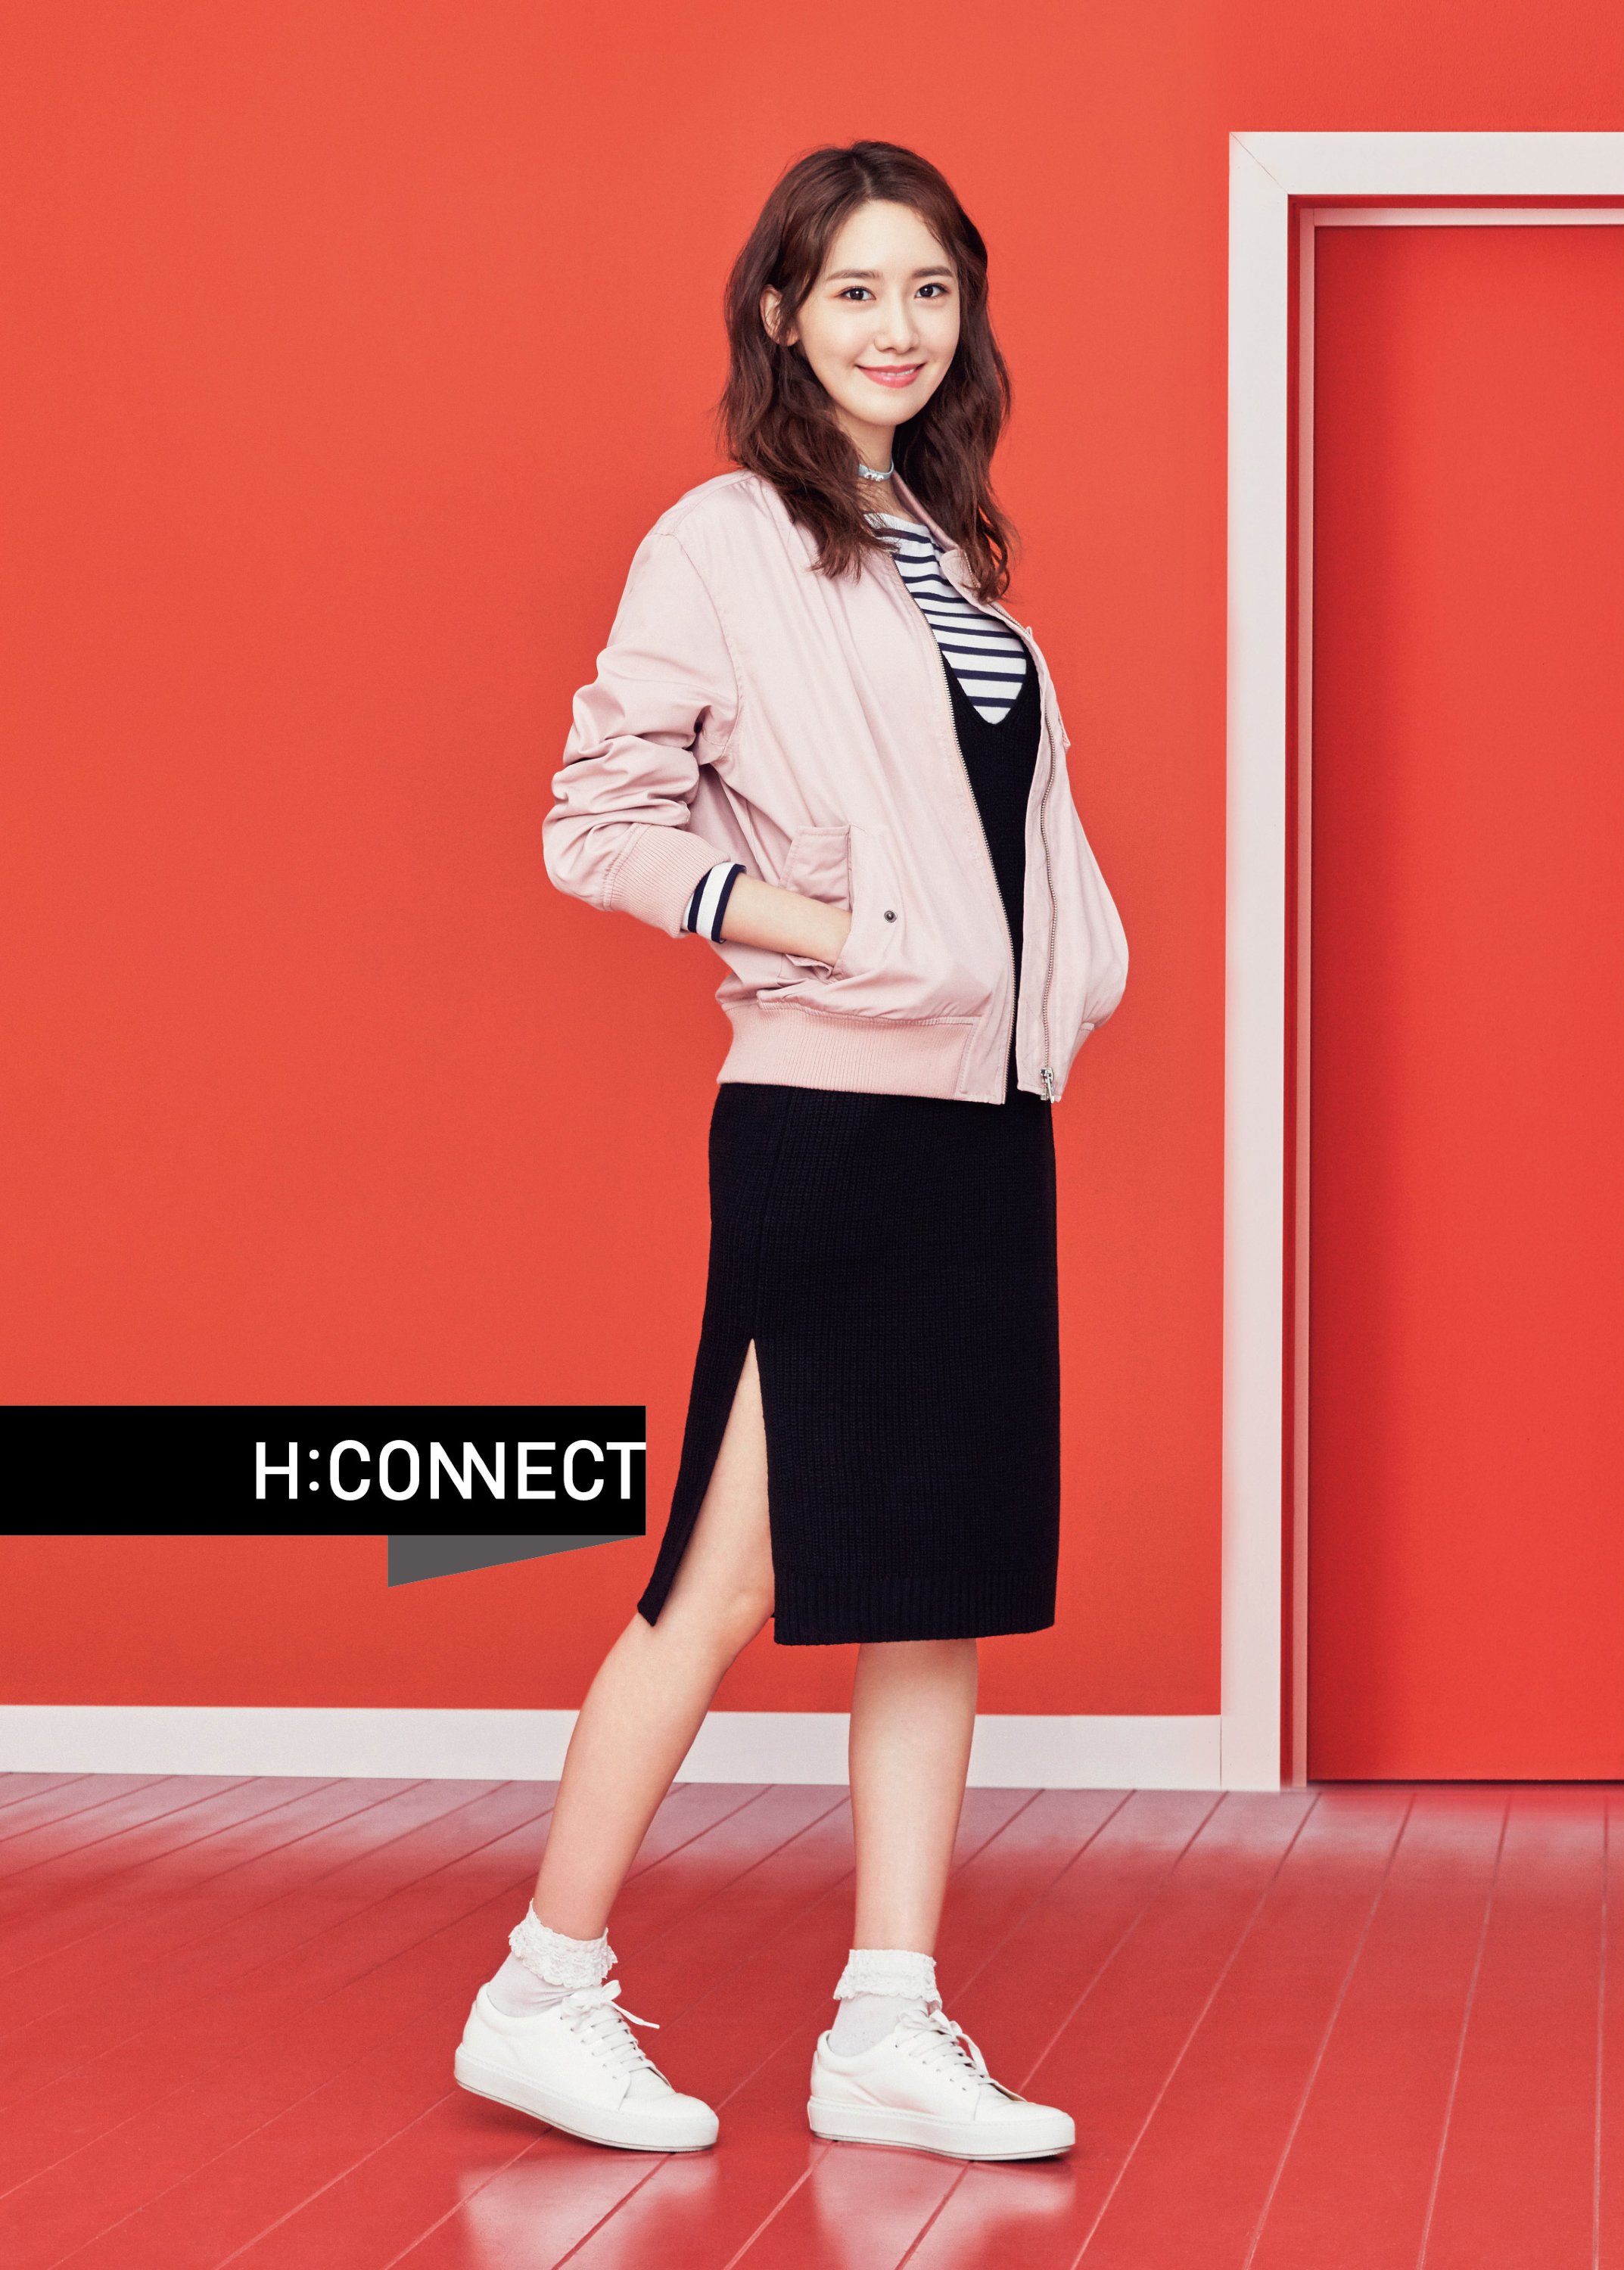 [OTHER][27-07-2015]YoonA trở thành người mẫu mới cho dòng thời trang "H:CONNECT" - Page 7 AJChuYHQ1i-3000x3000